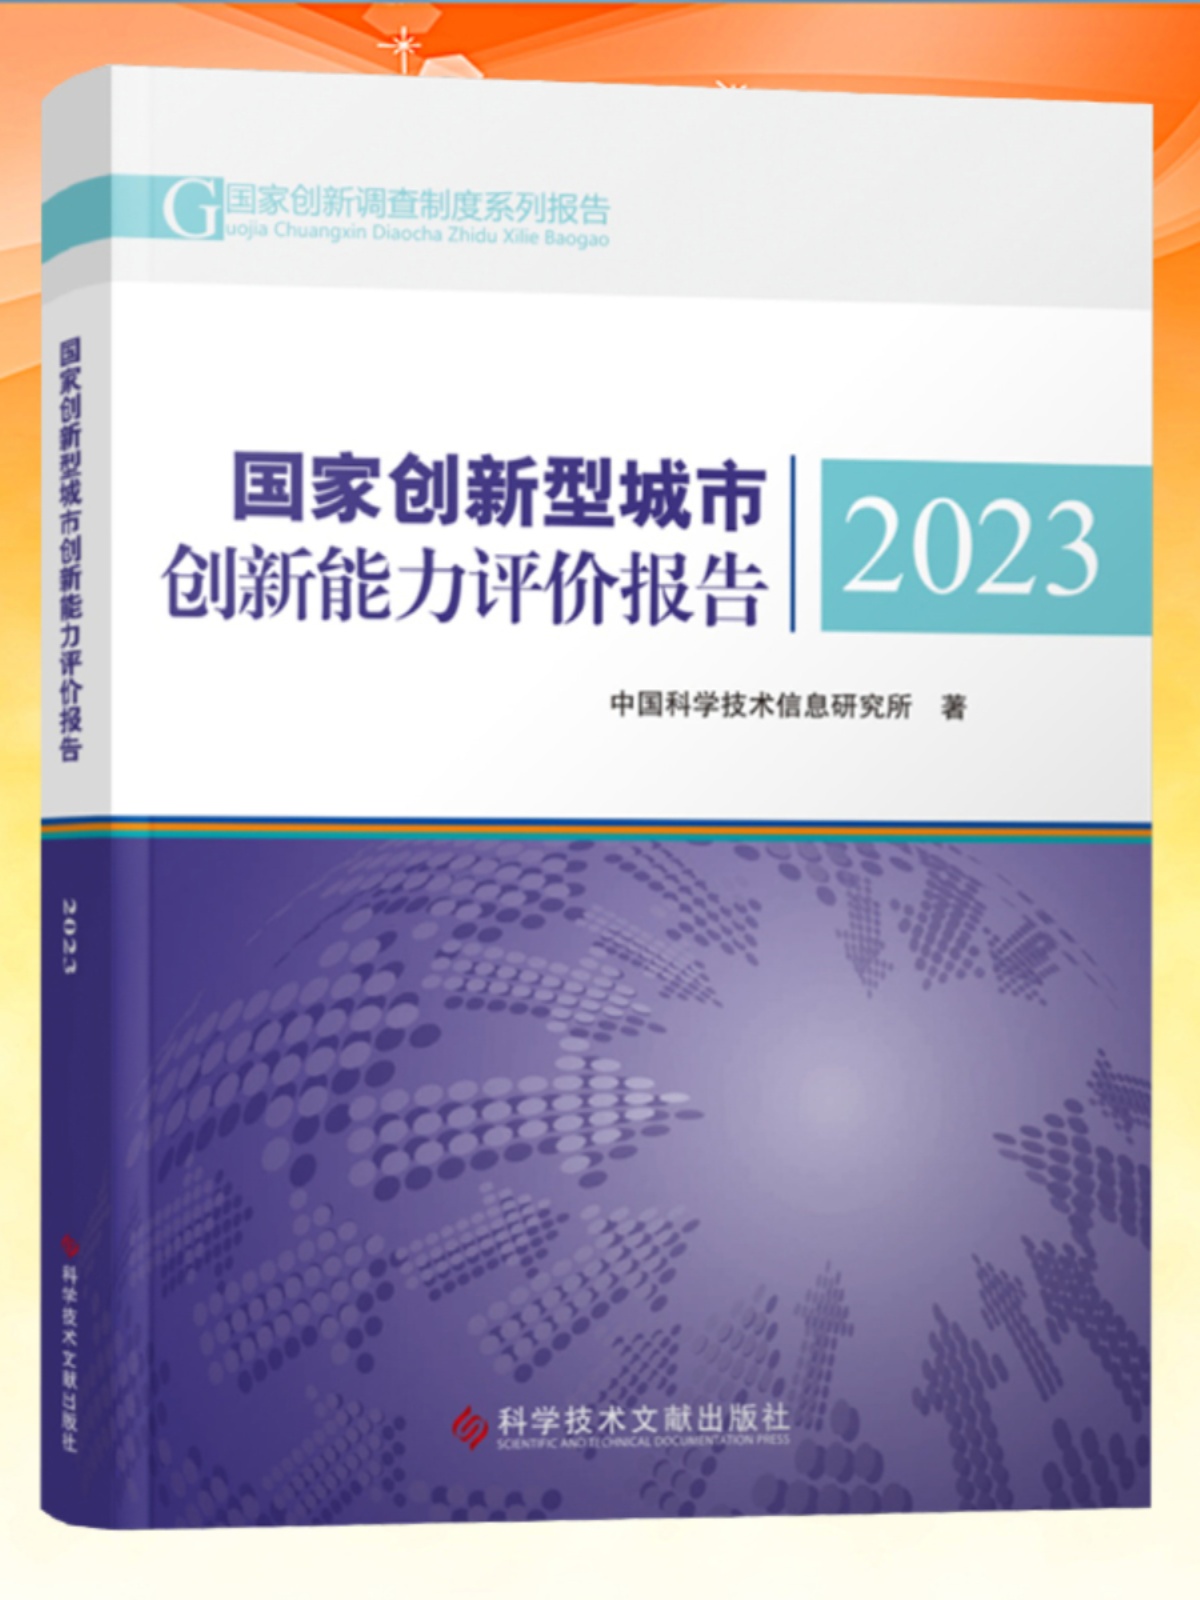 全新正版 国家创新型城市创新能力评价报告2023 中国科学技术信息研究所 书籍